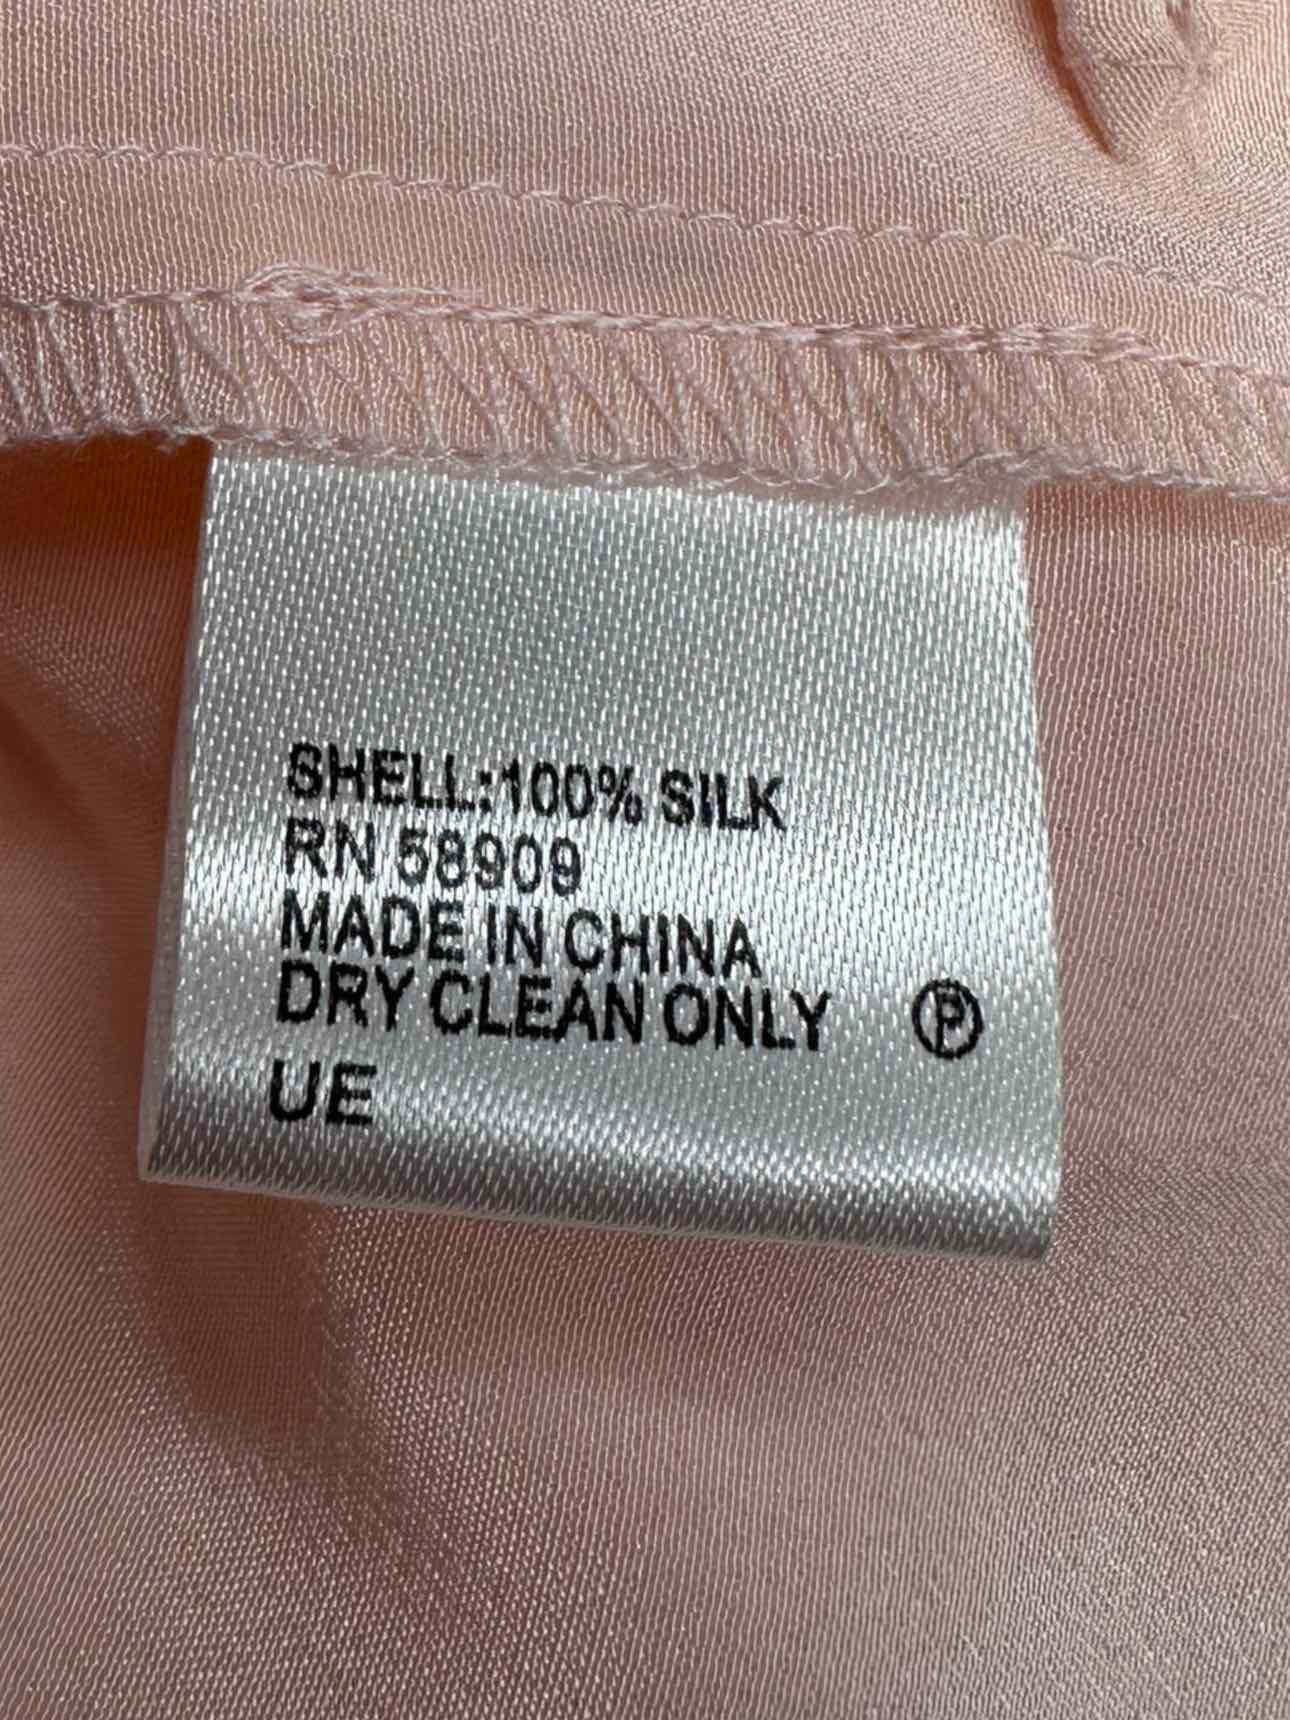 ANTONIO MELANI Pink 100% Silk Button-Down Blouse Size M